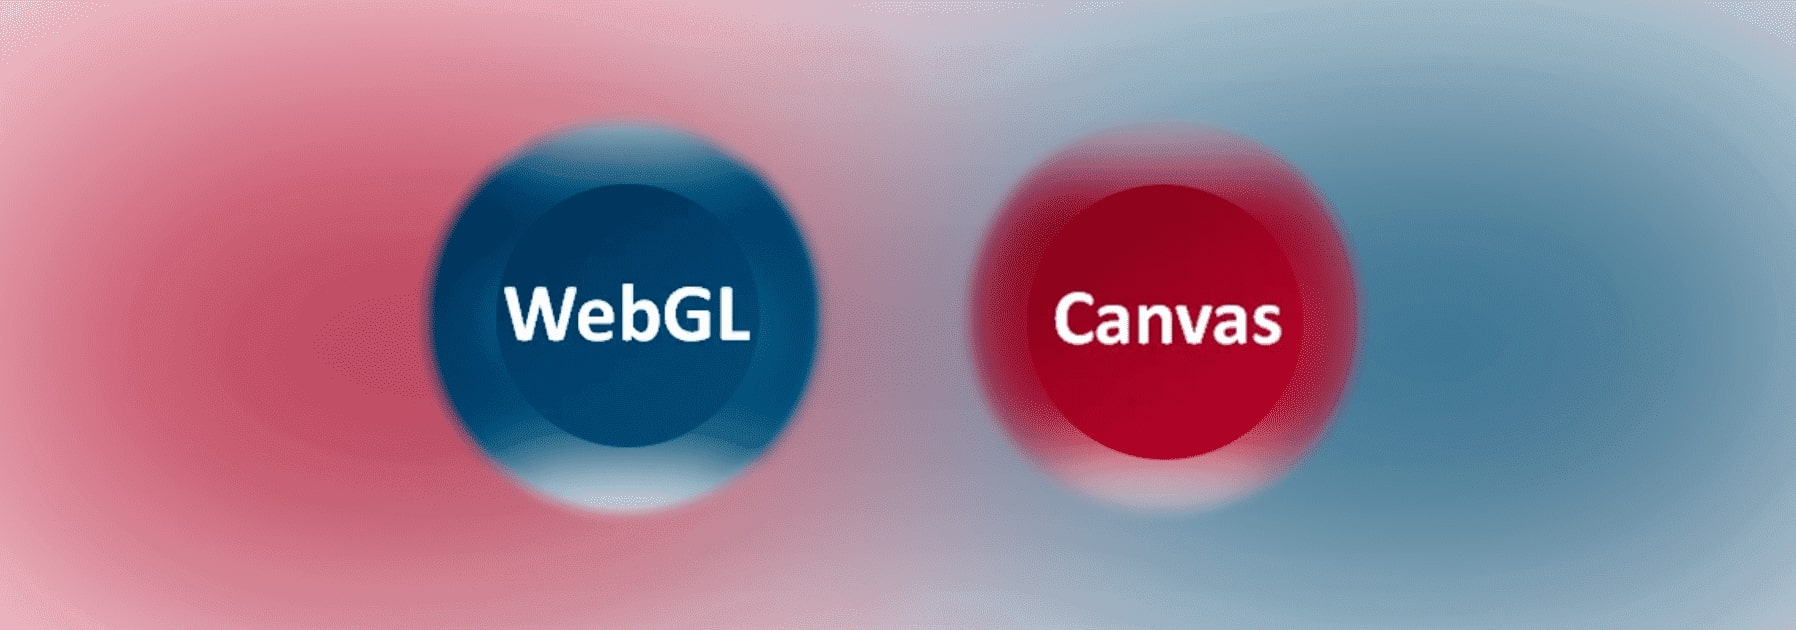 Canvas and WebGL